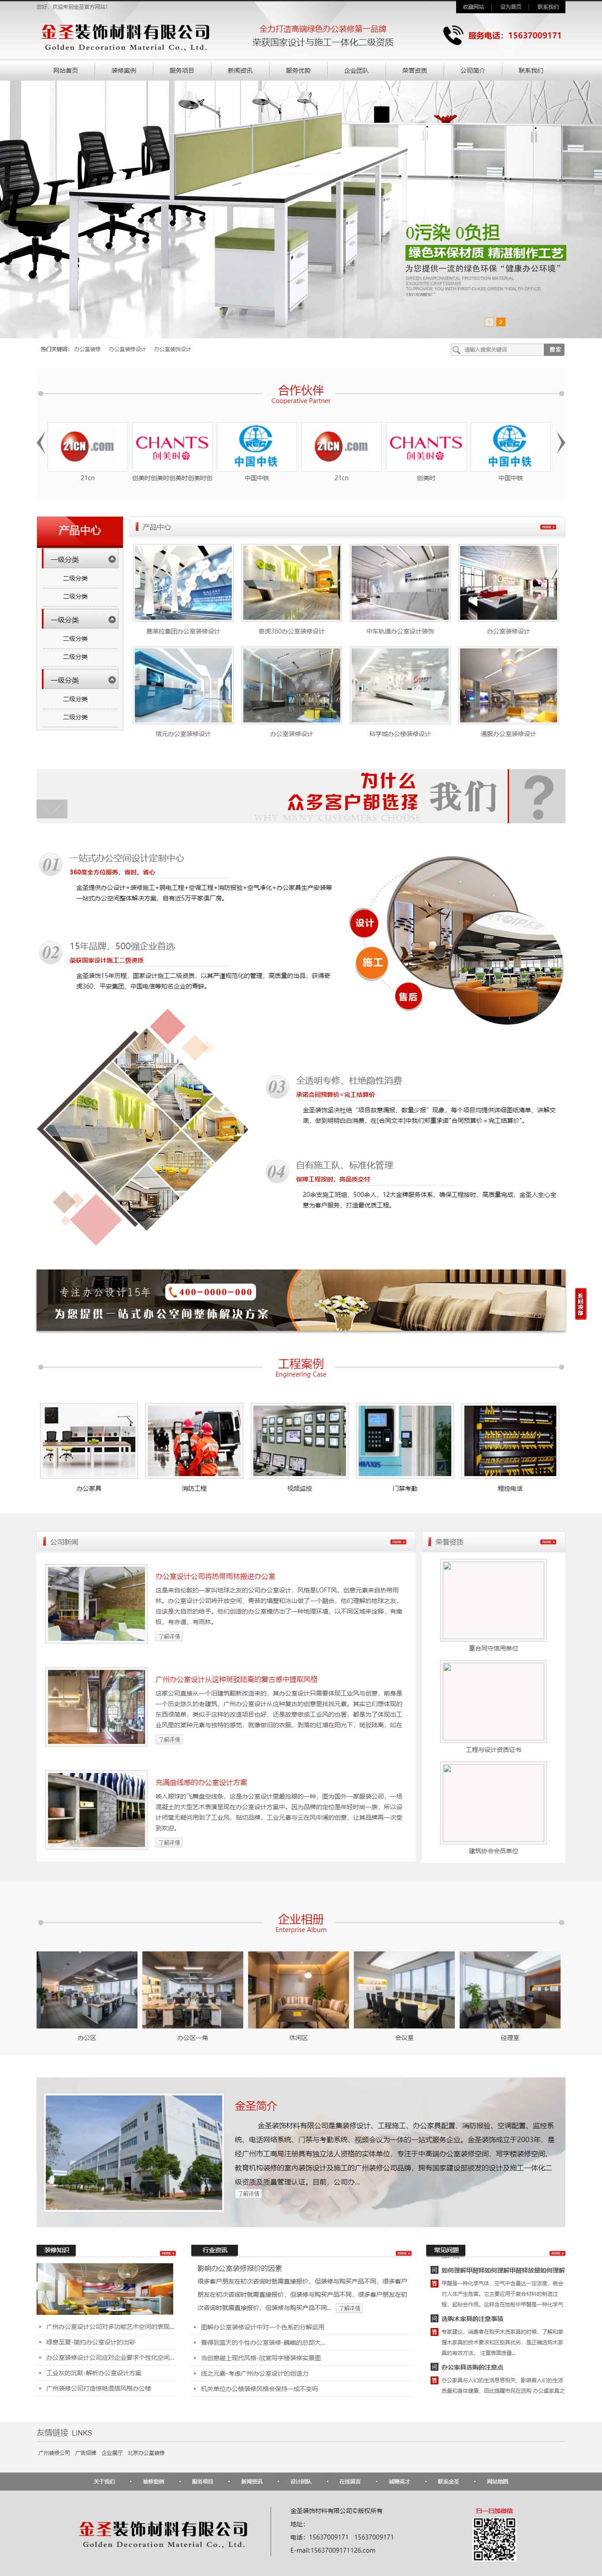 鄭州裝飾材料公司網站設計制作建設(圖1)